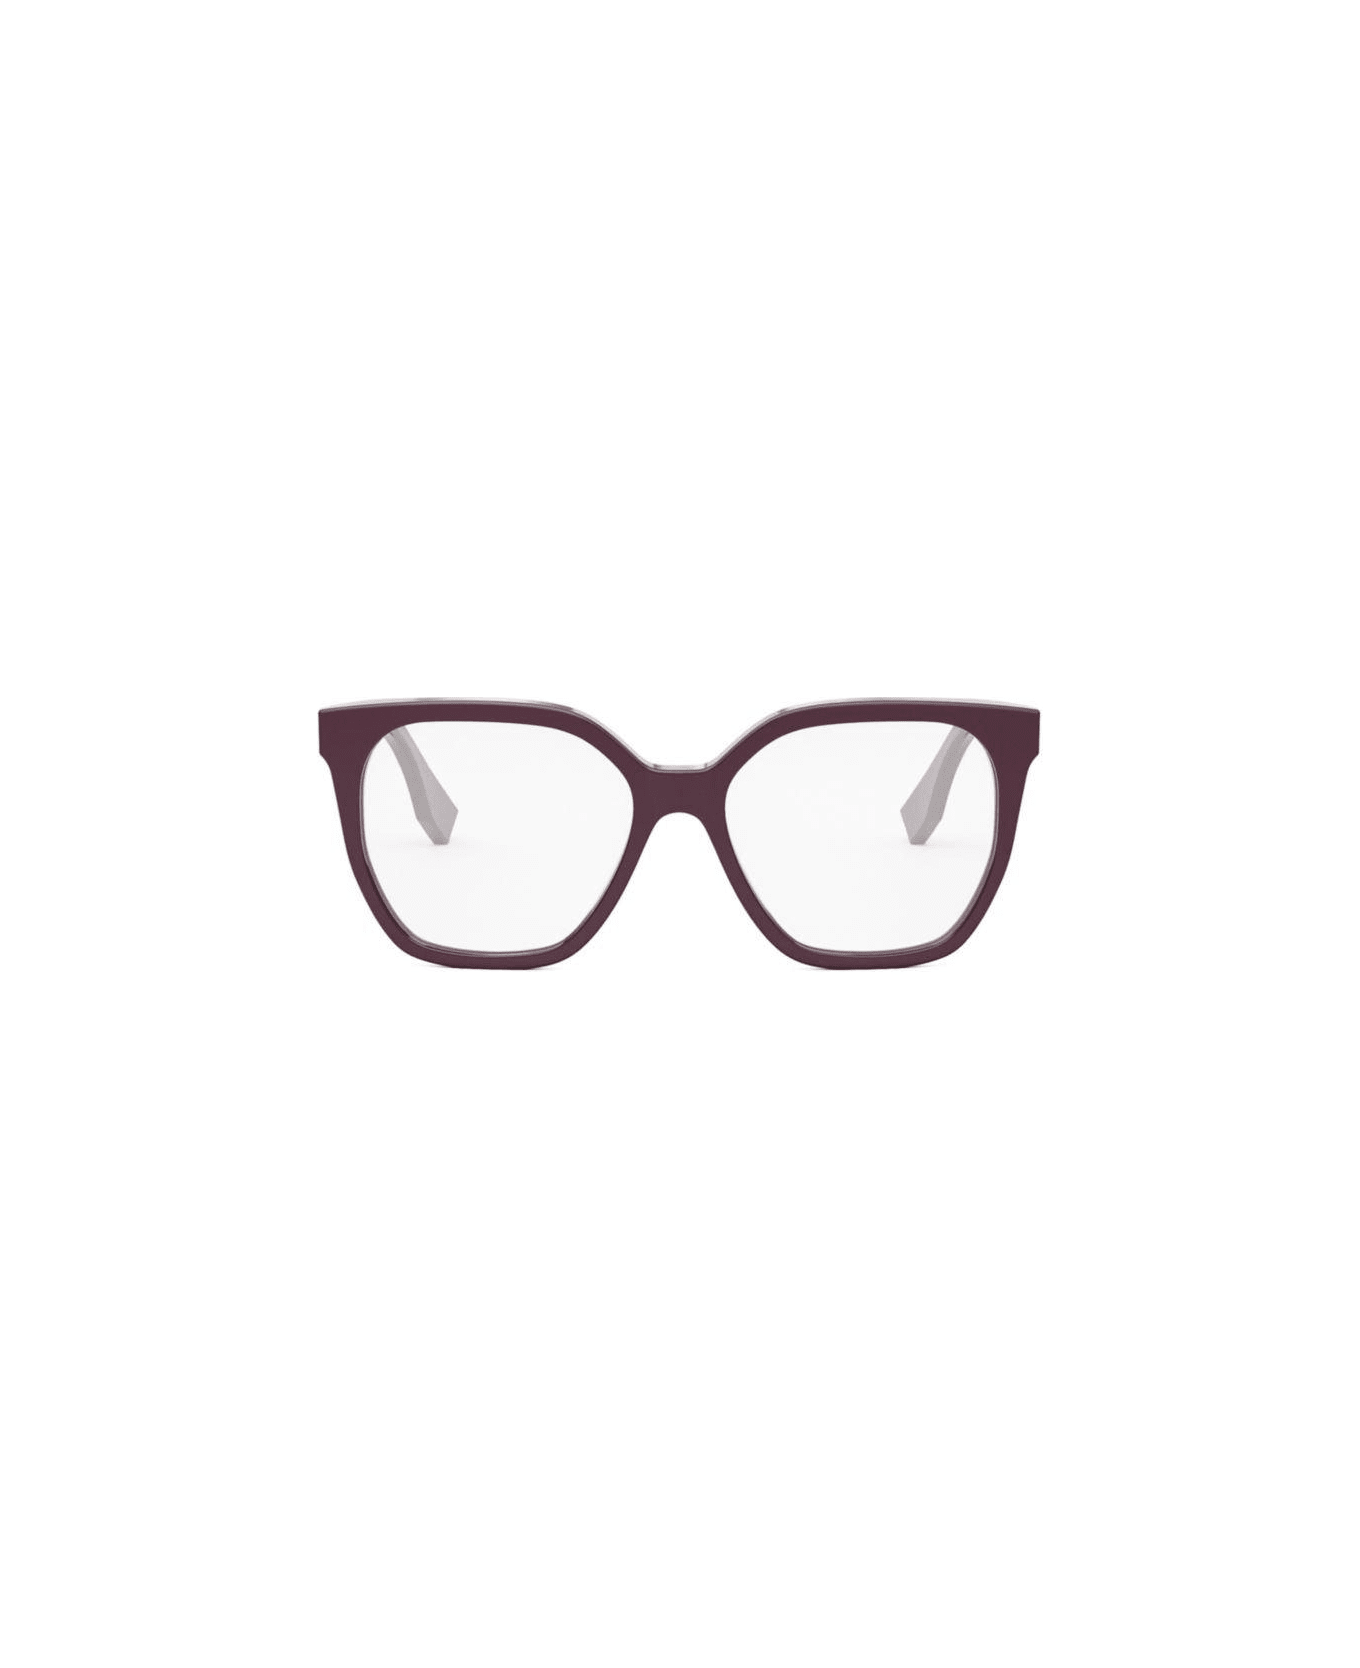 Fendi Eyewear Square Frame Glasses - 081 アイウェア